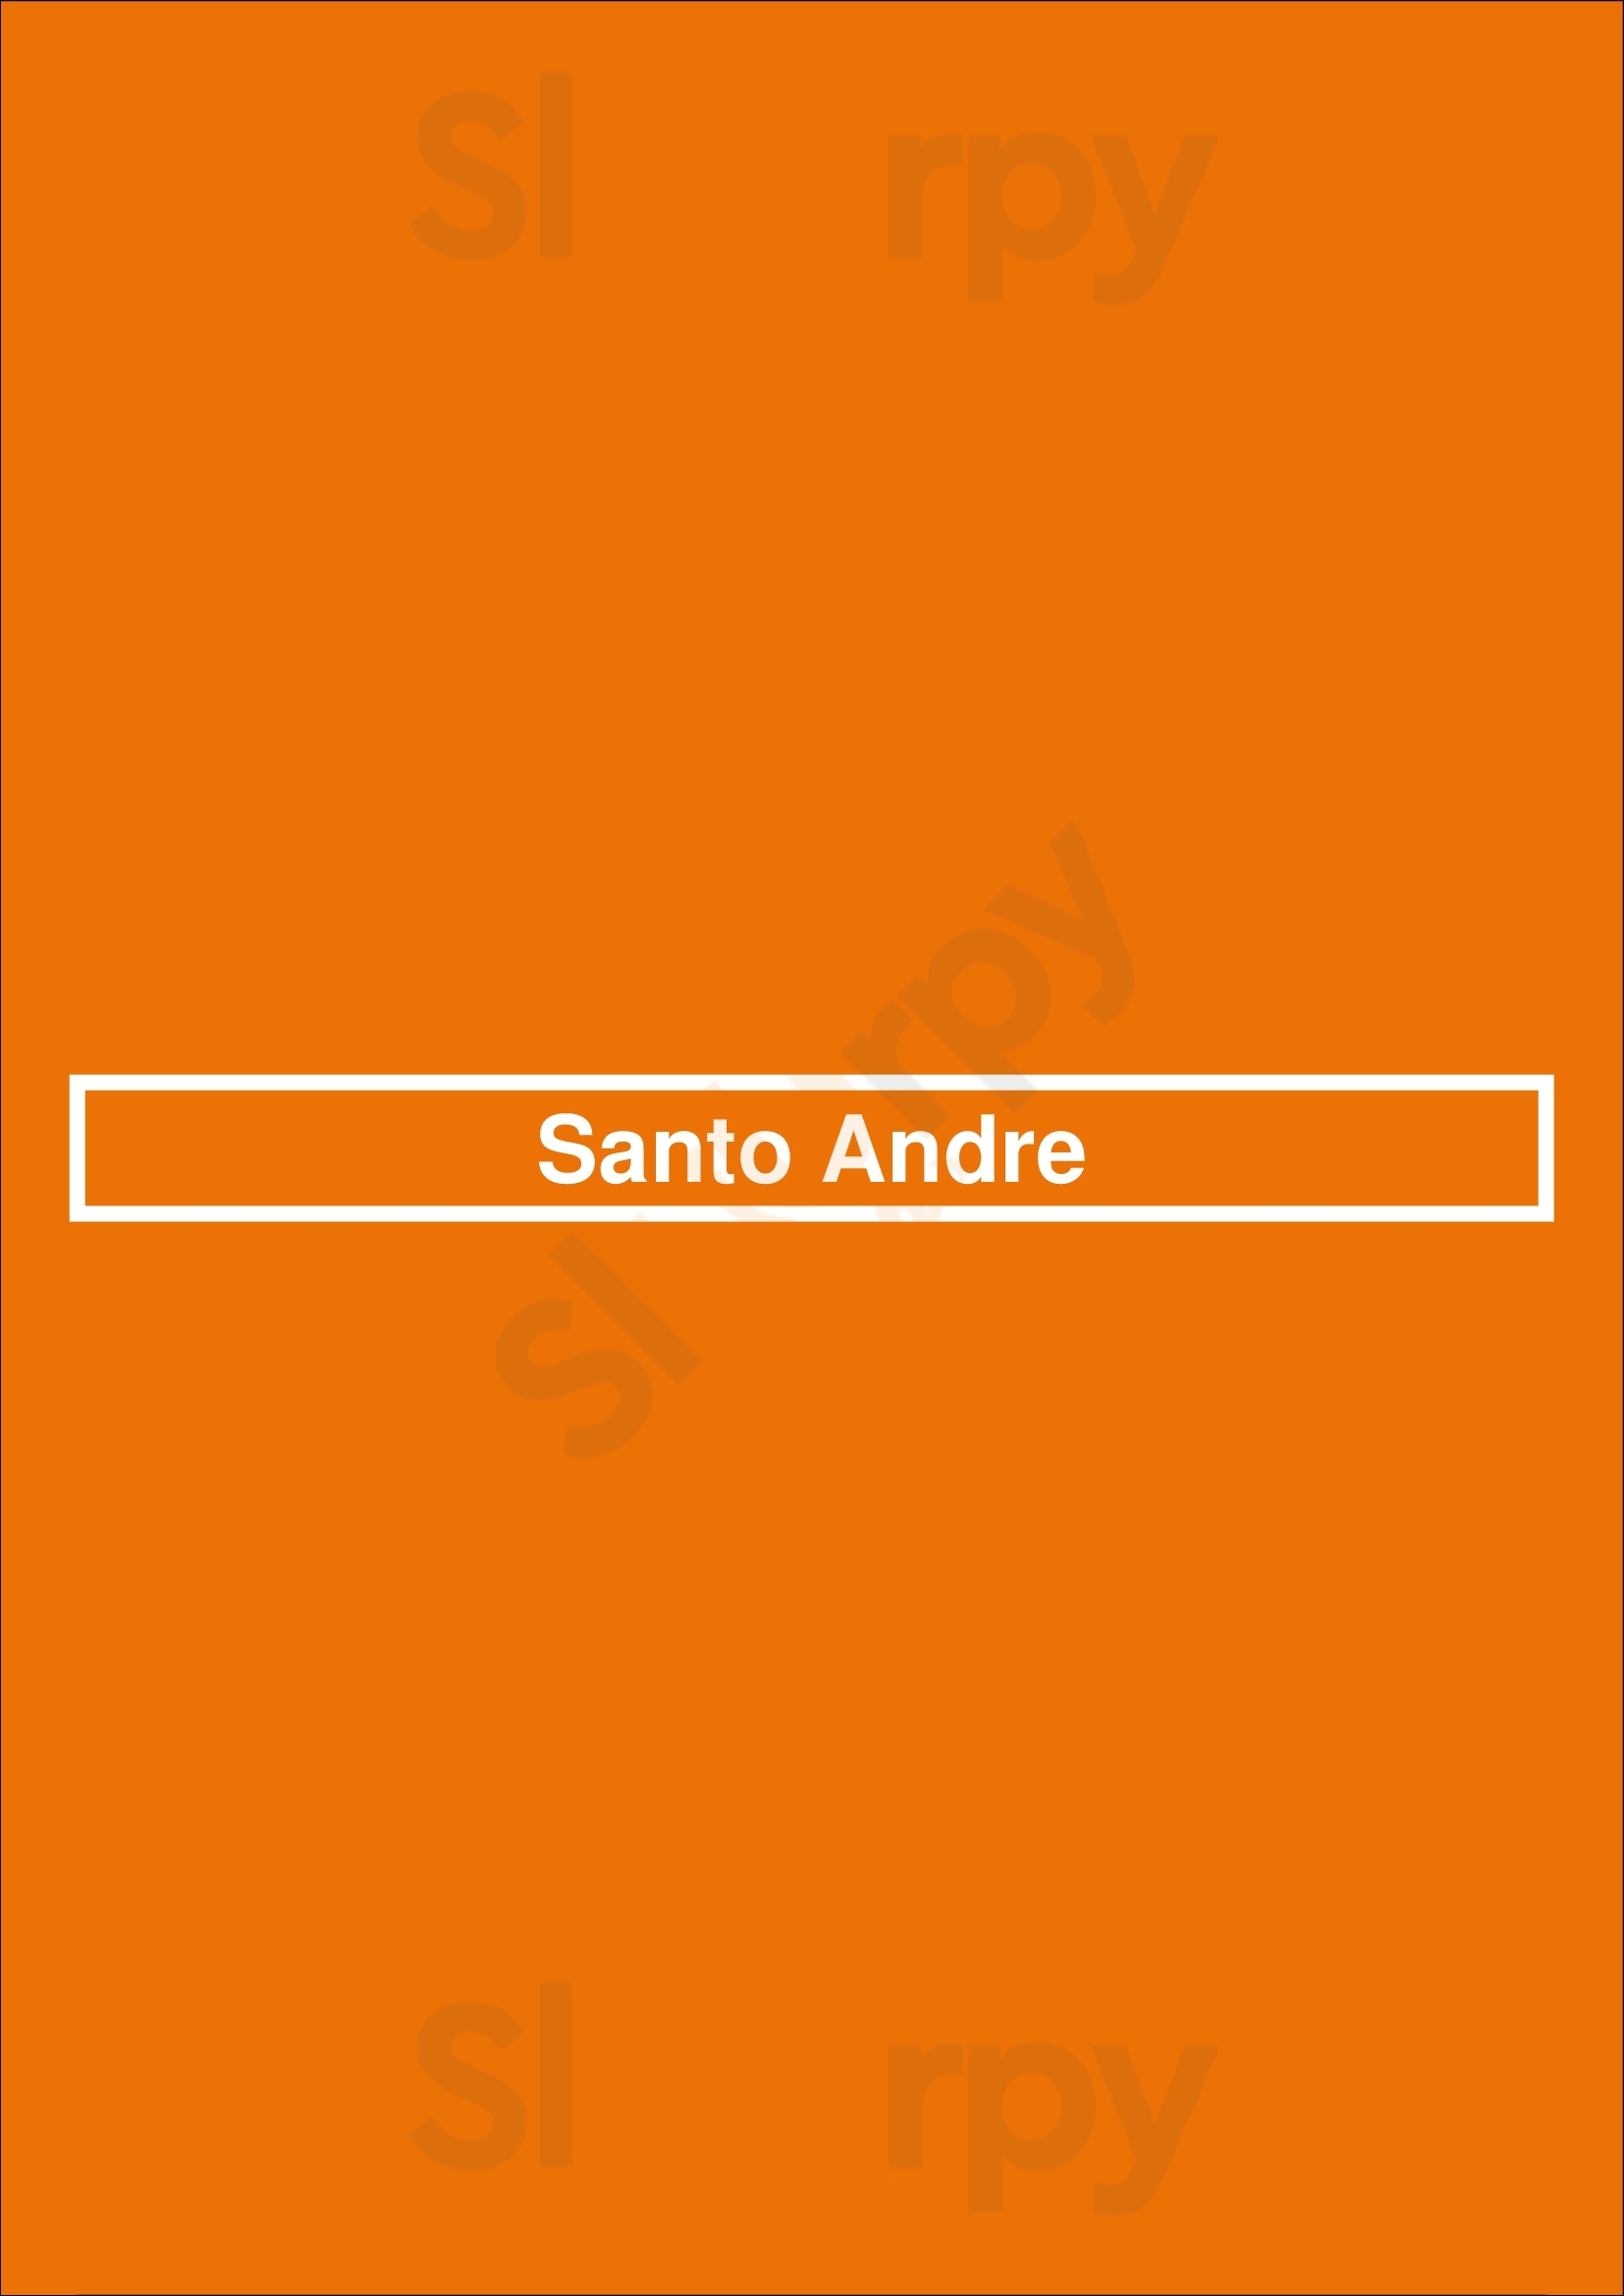 Santo Andre Lisboa Menu - 1